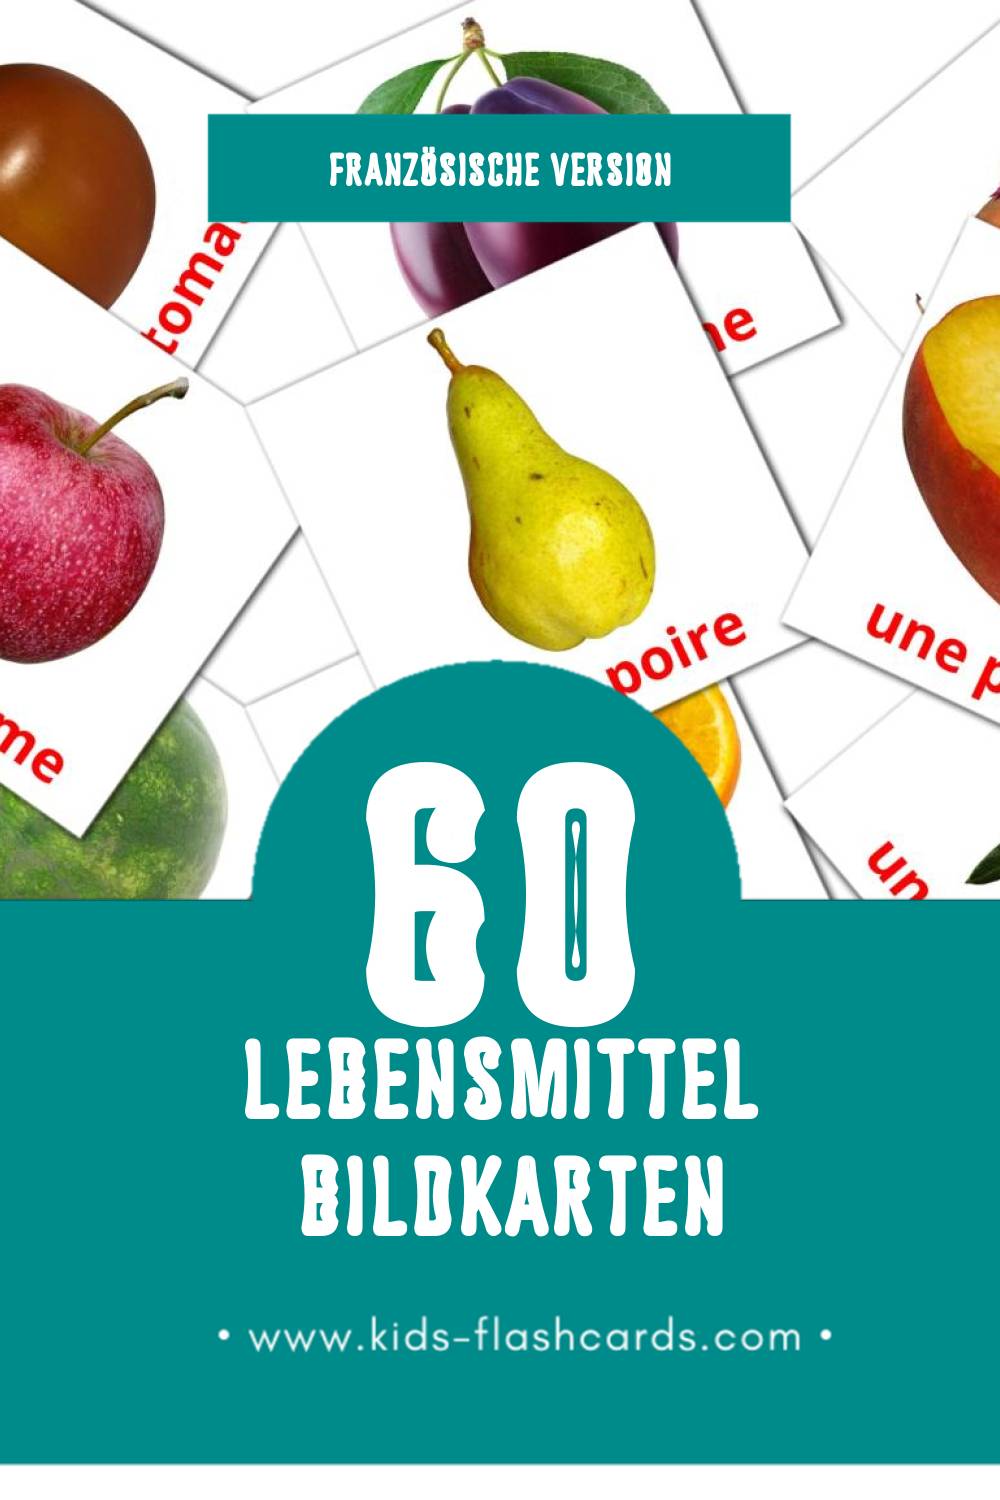 Visual Nourriture Flashcards für Kleinkinder (60 Karten in Französisch)